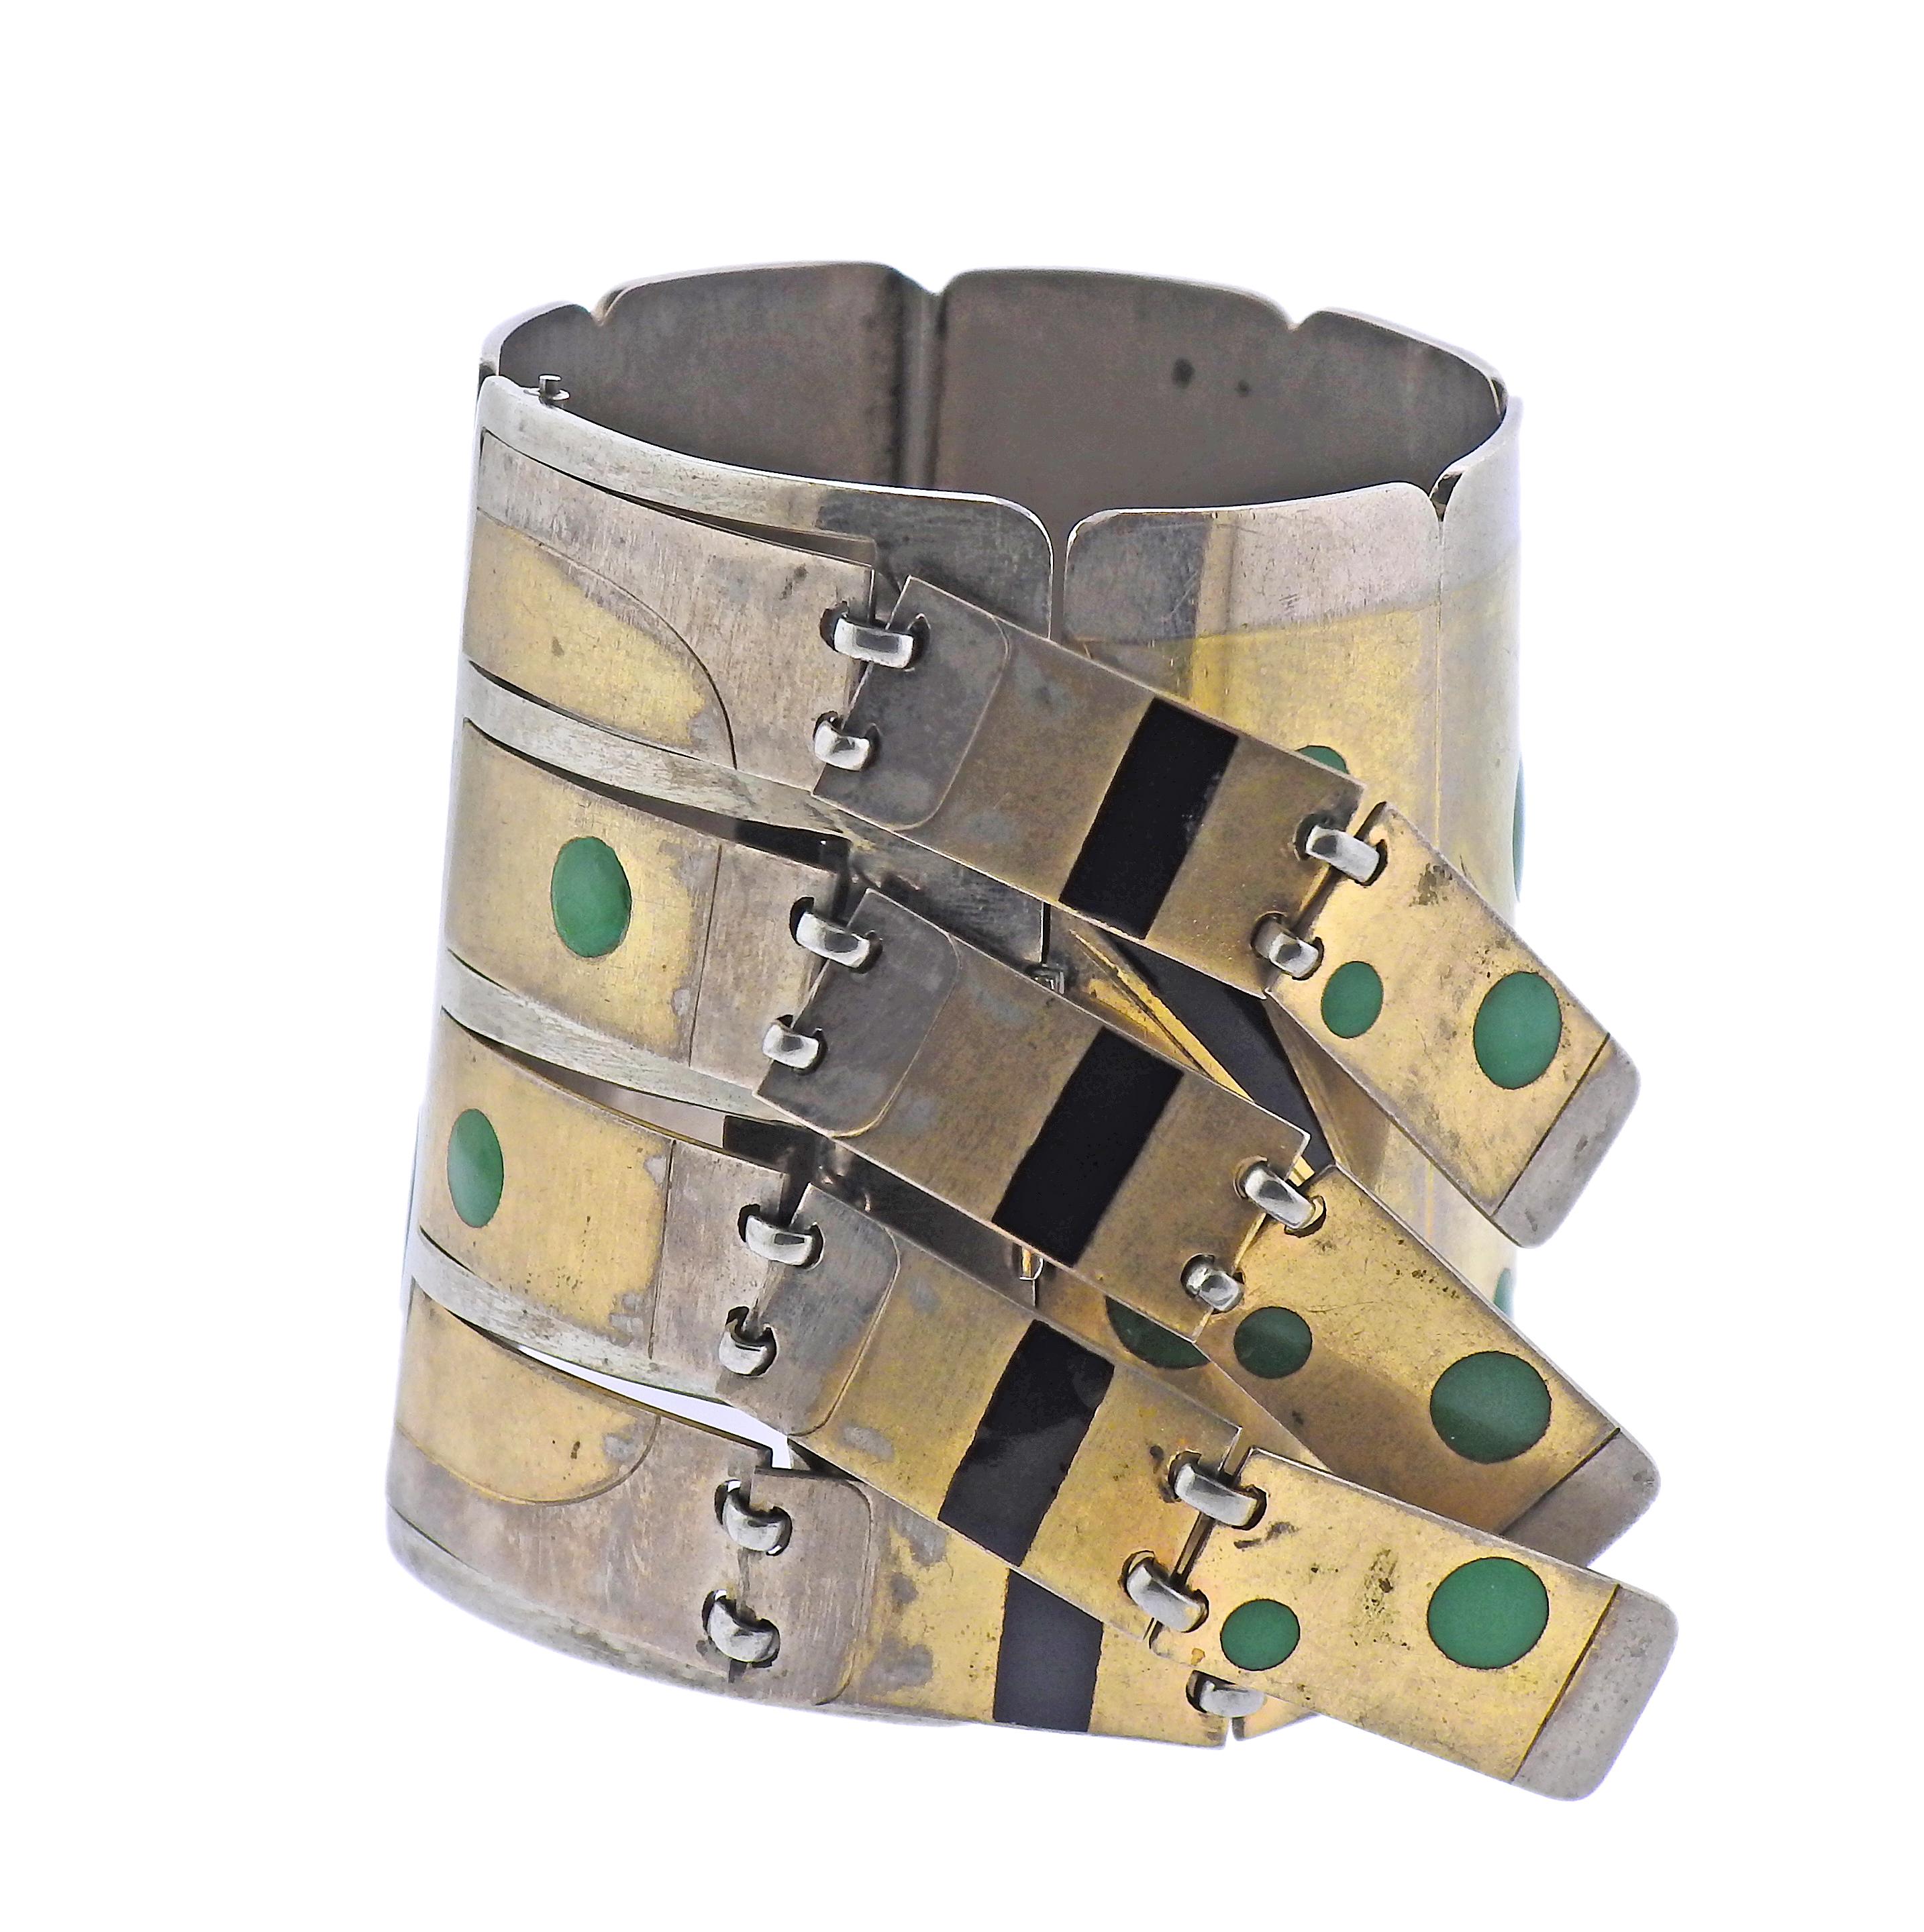 Bracelet de fabrication française en métal mixte or et argent avec franges et incrustations de pierres précieuses (onyx et chrysoprase). Le bracelet s'adapte à un poignet de 7